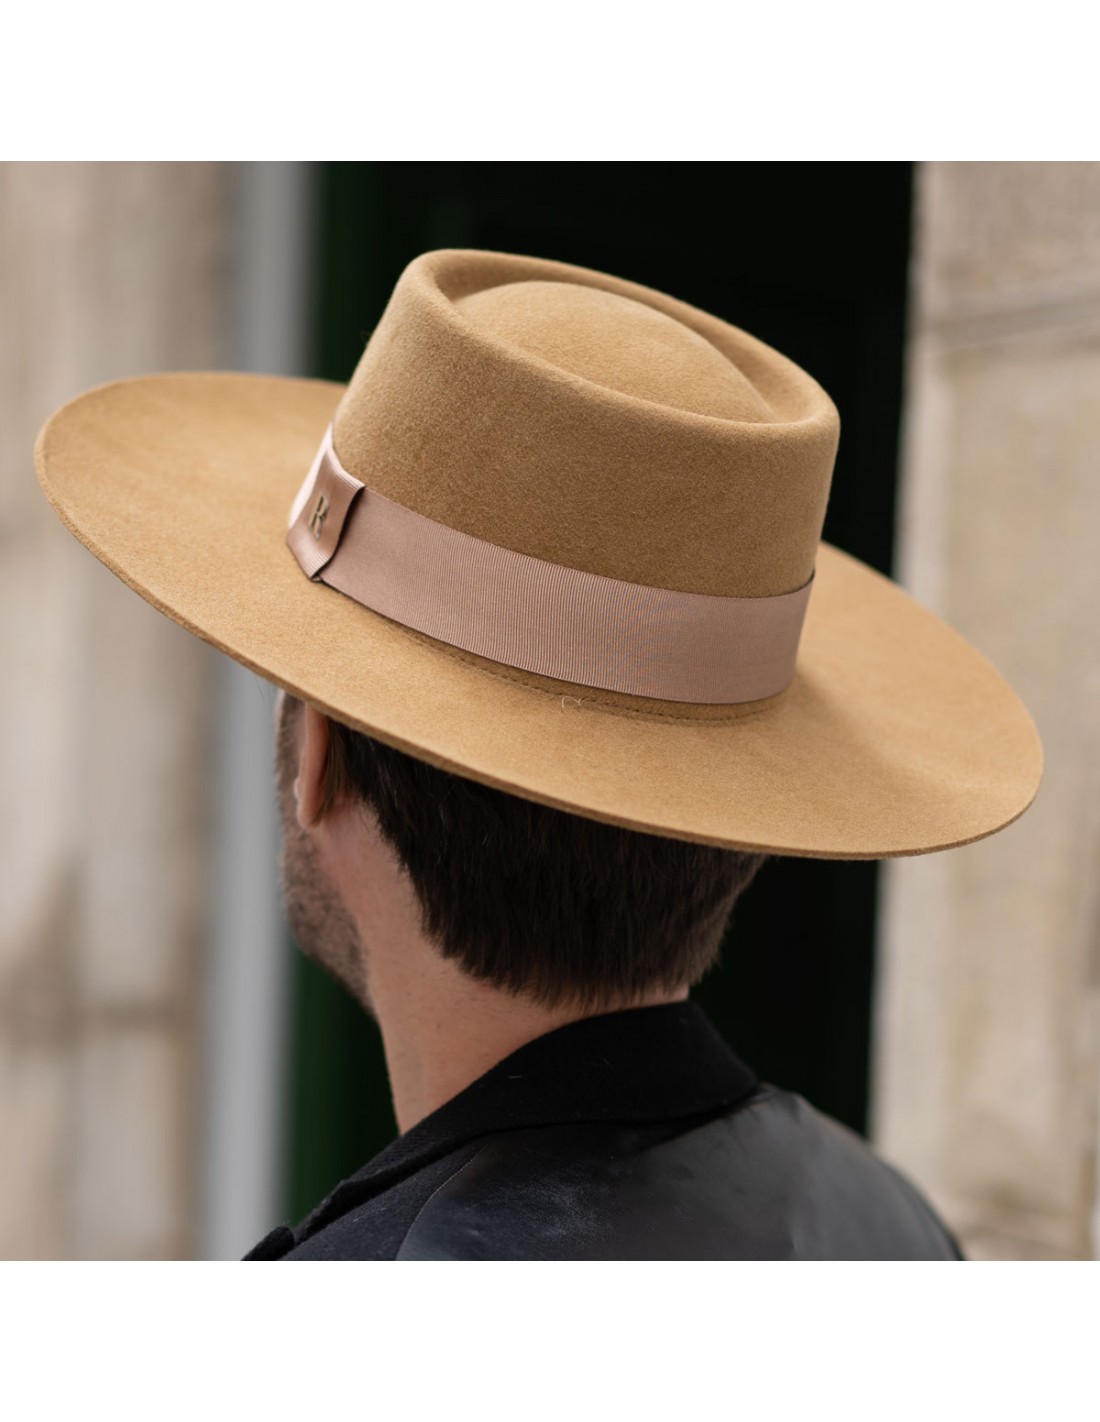 Acquista il cappello di feltro da uomo Arizona - Raceu Hats Online